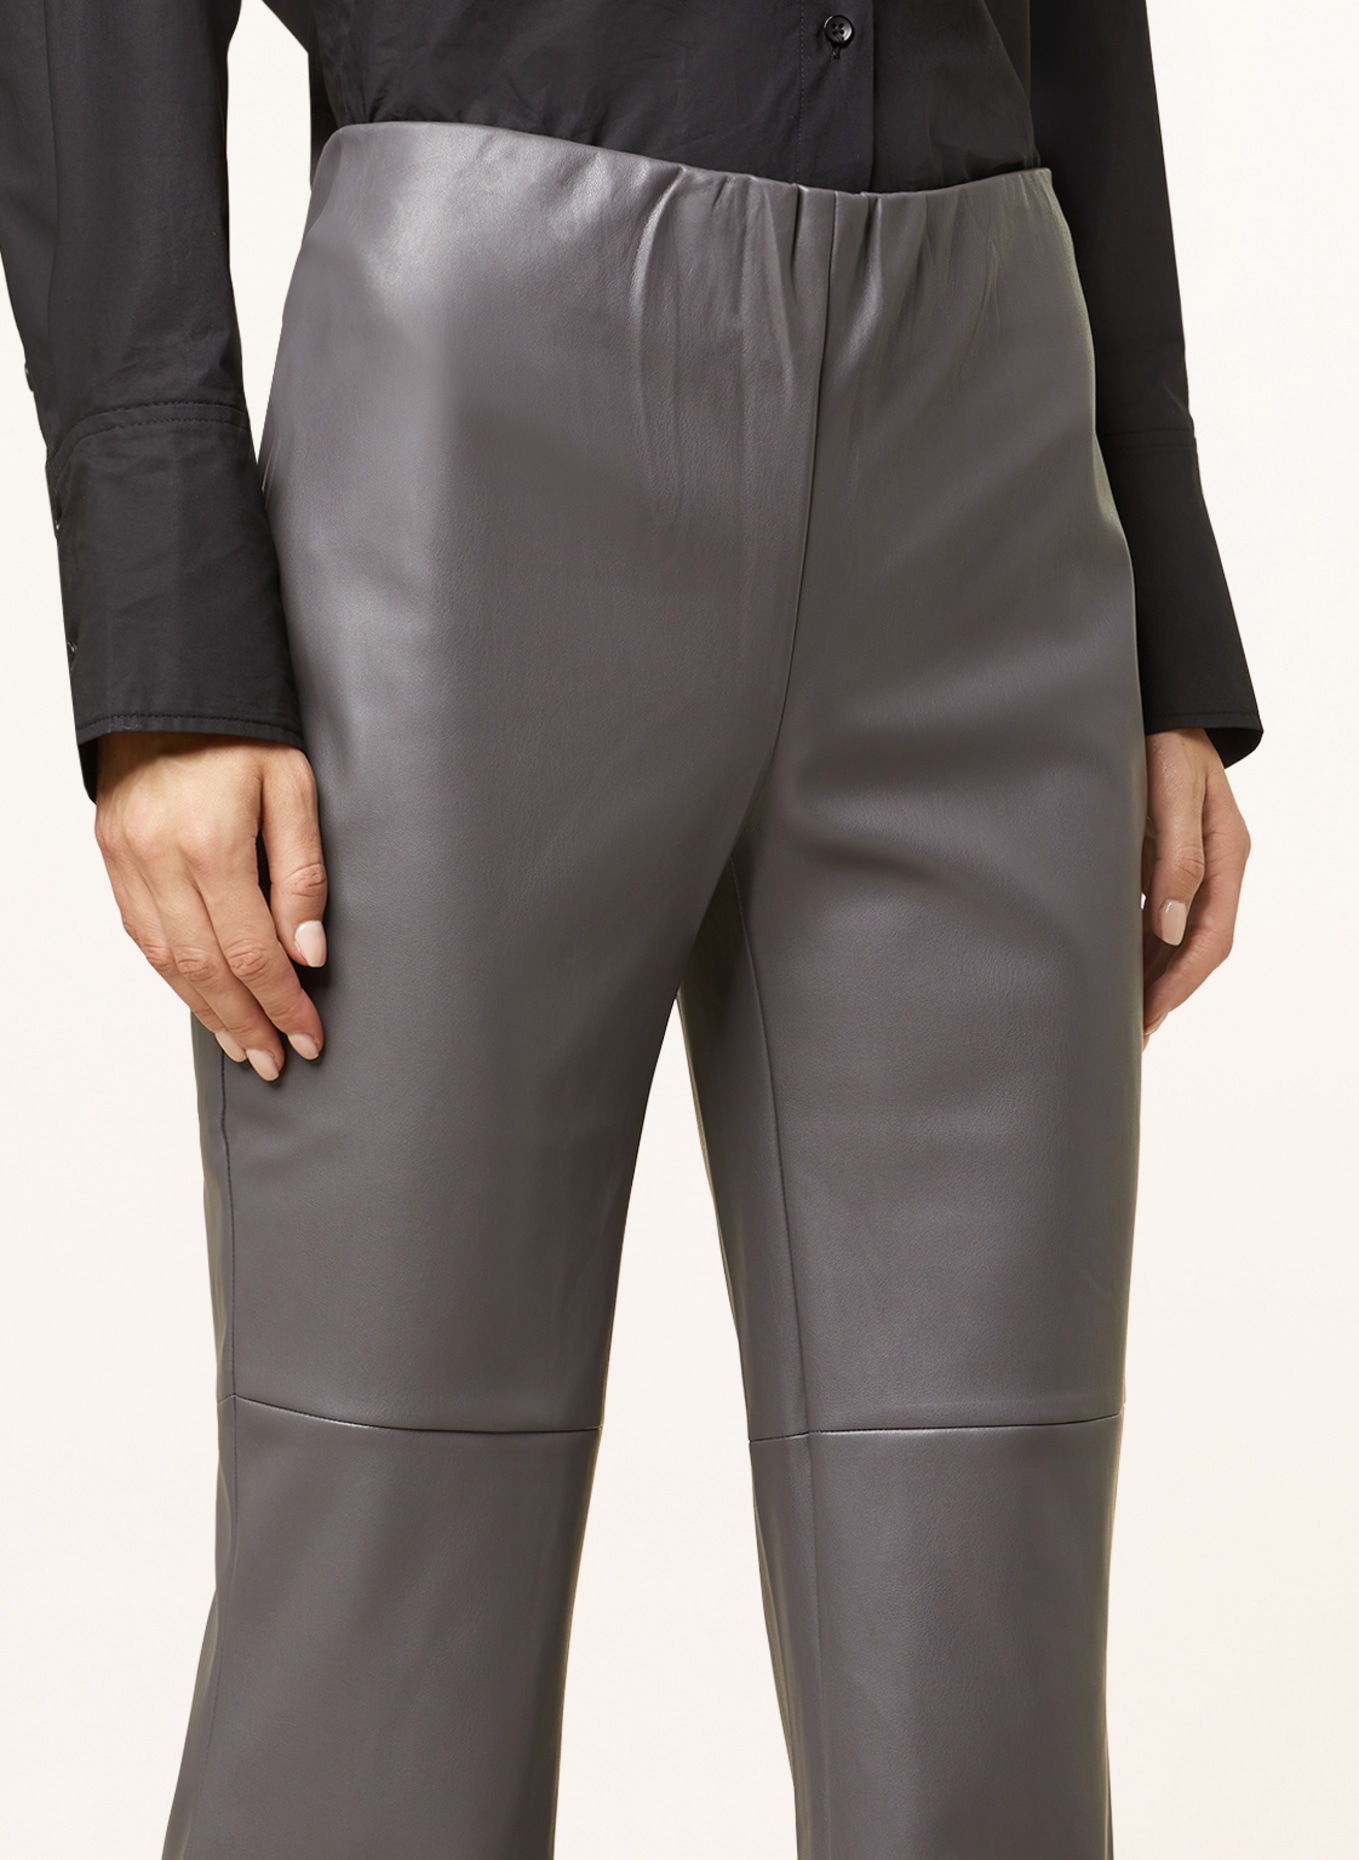 HERZEN'S ANGELEGENHEIT Pants in leather look, Color: GRAY (Image 5)